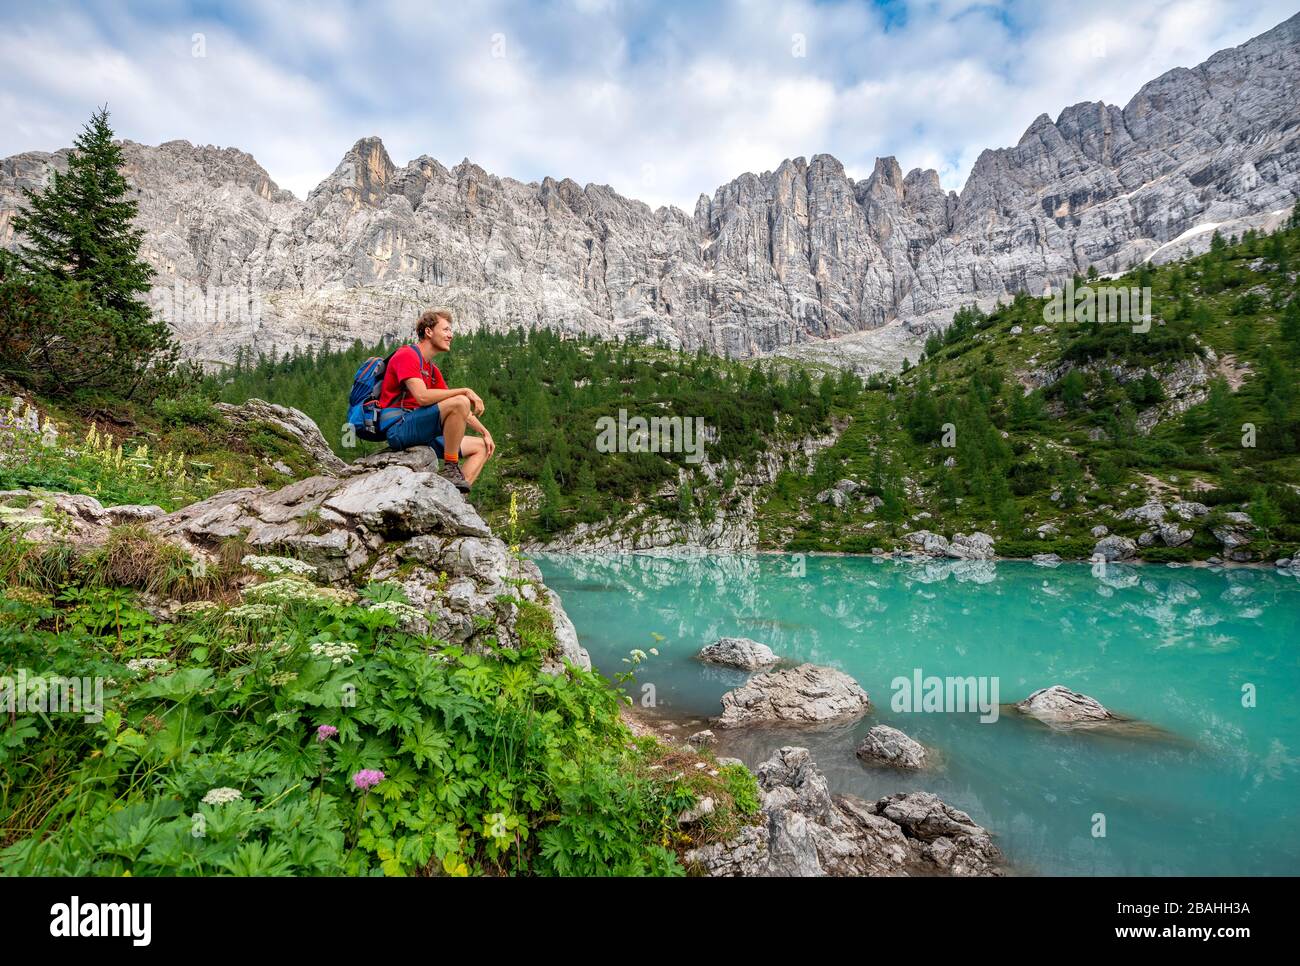 Escursionista seduto, adagiato su una roccia al lago verde turchese di Sorapis, Lago di Sorapis, Dolomiti, Belluno, Italia Foto Stock